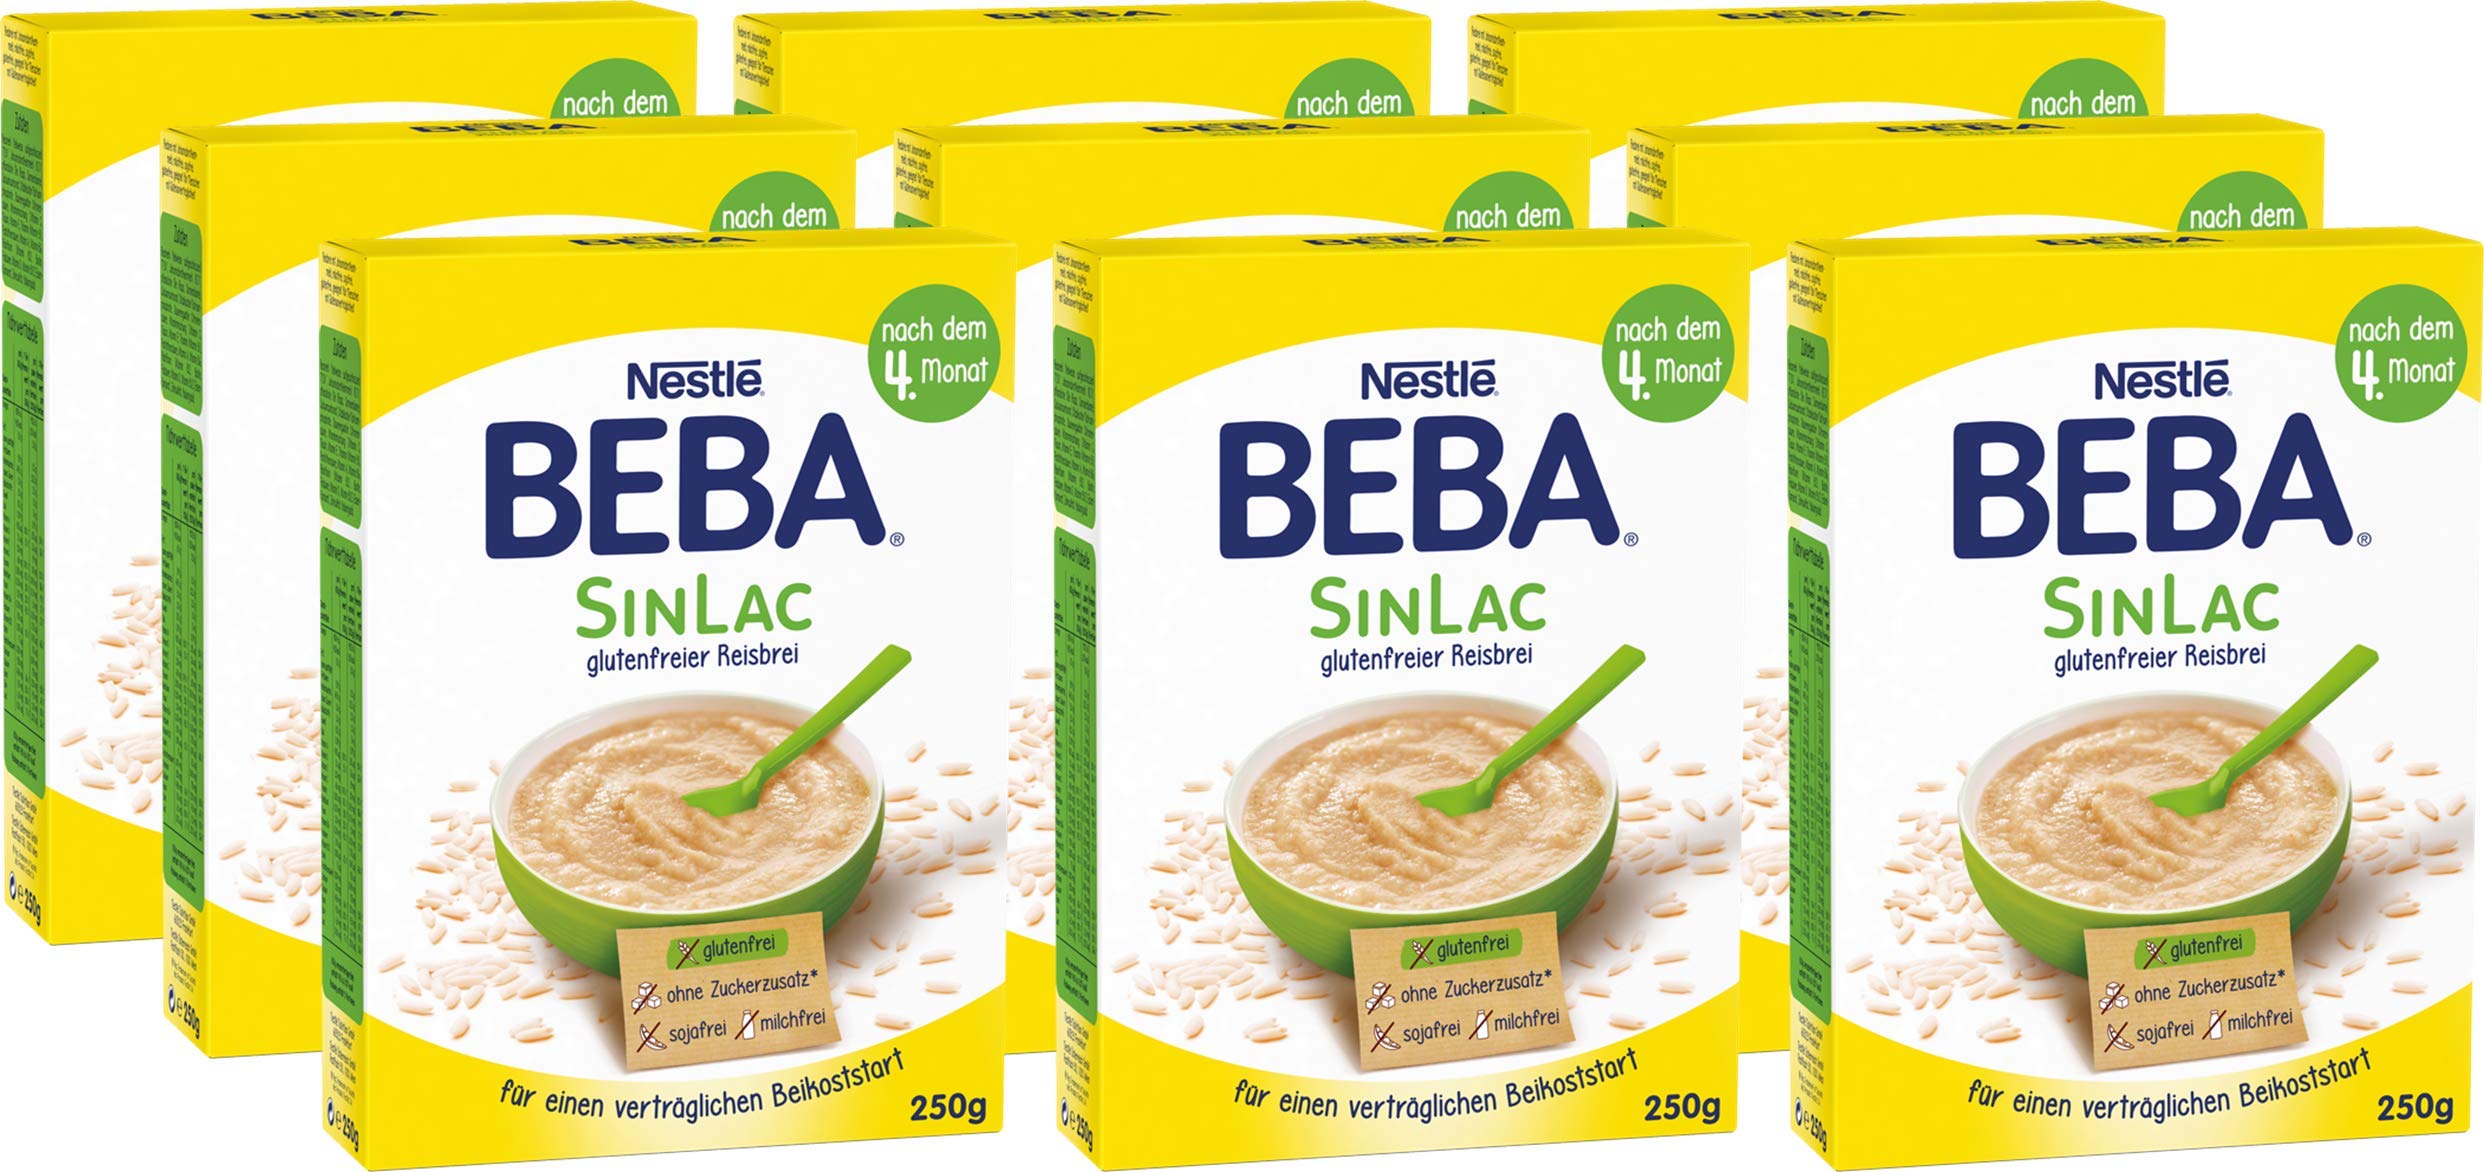 Nestlé BEBA SINLAC glutenfreier Reisbrei, sojafrei, milchfrei, Pulver, 9er Pack (9 x 250g)